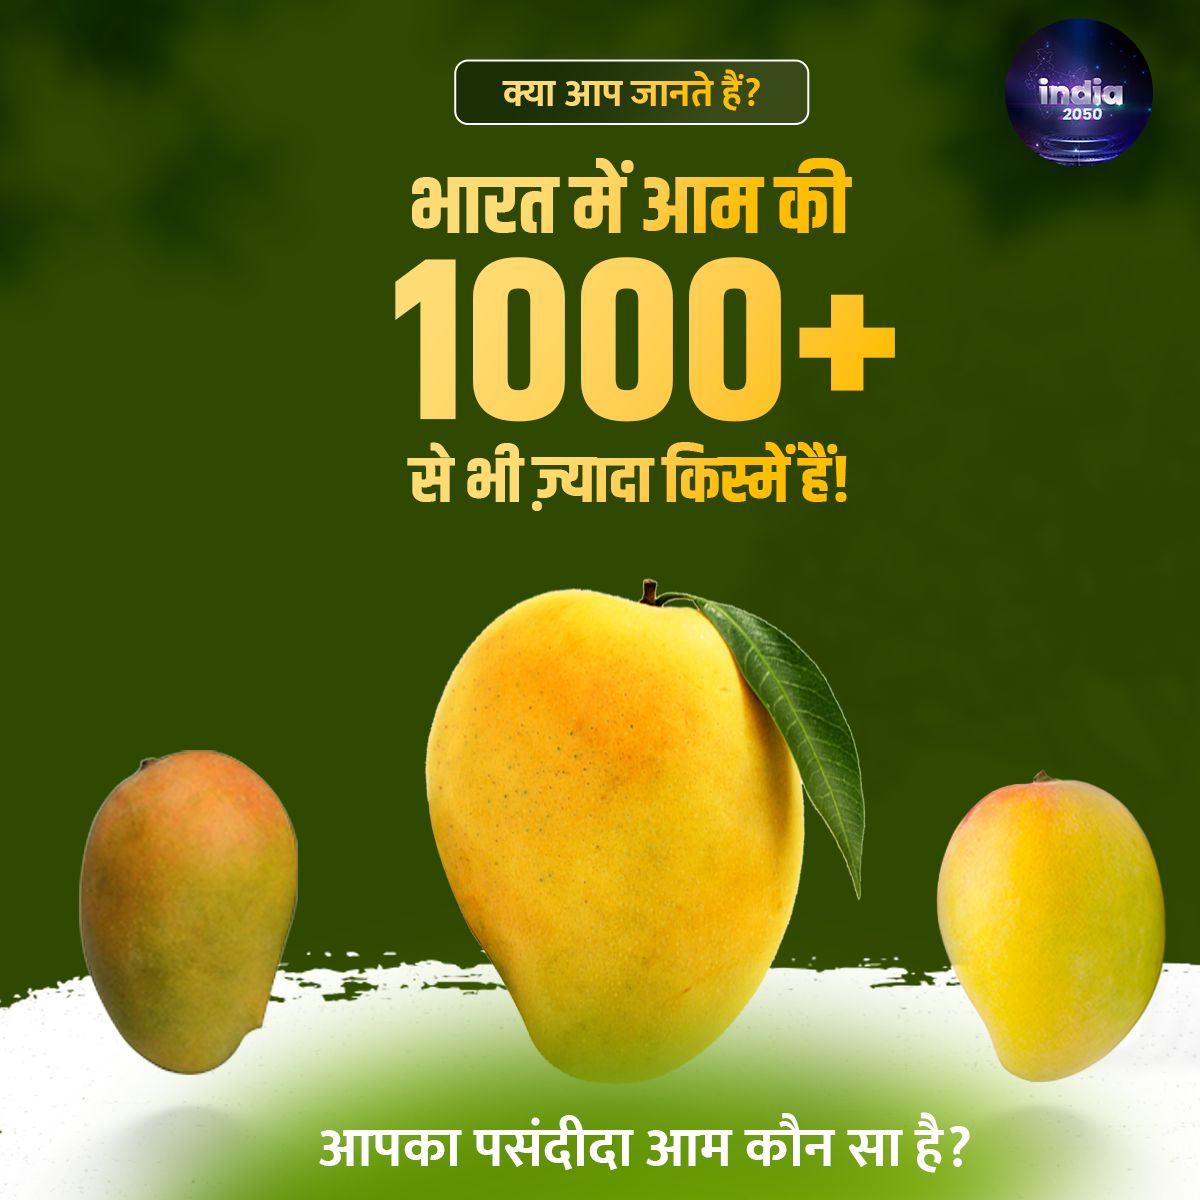 क्या आपको पता है कि दुनिया में सबसे ज़्यादा आम कहाँ उगते हैं🤔

जवाब है - #भारत! हम पैदा करते हैं दुनिया के लगभग आधे आम!

#Mango #mangolove #MangoSeason